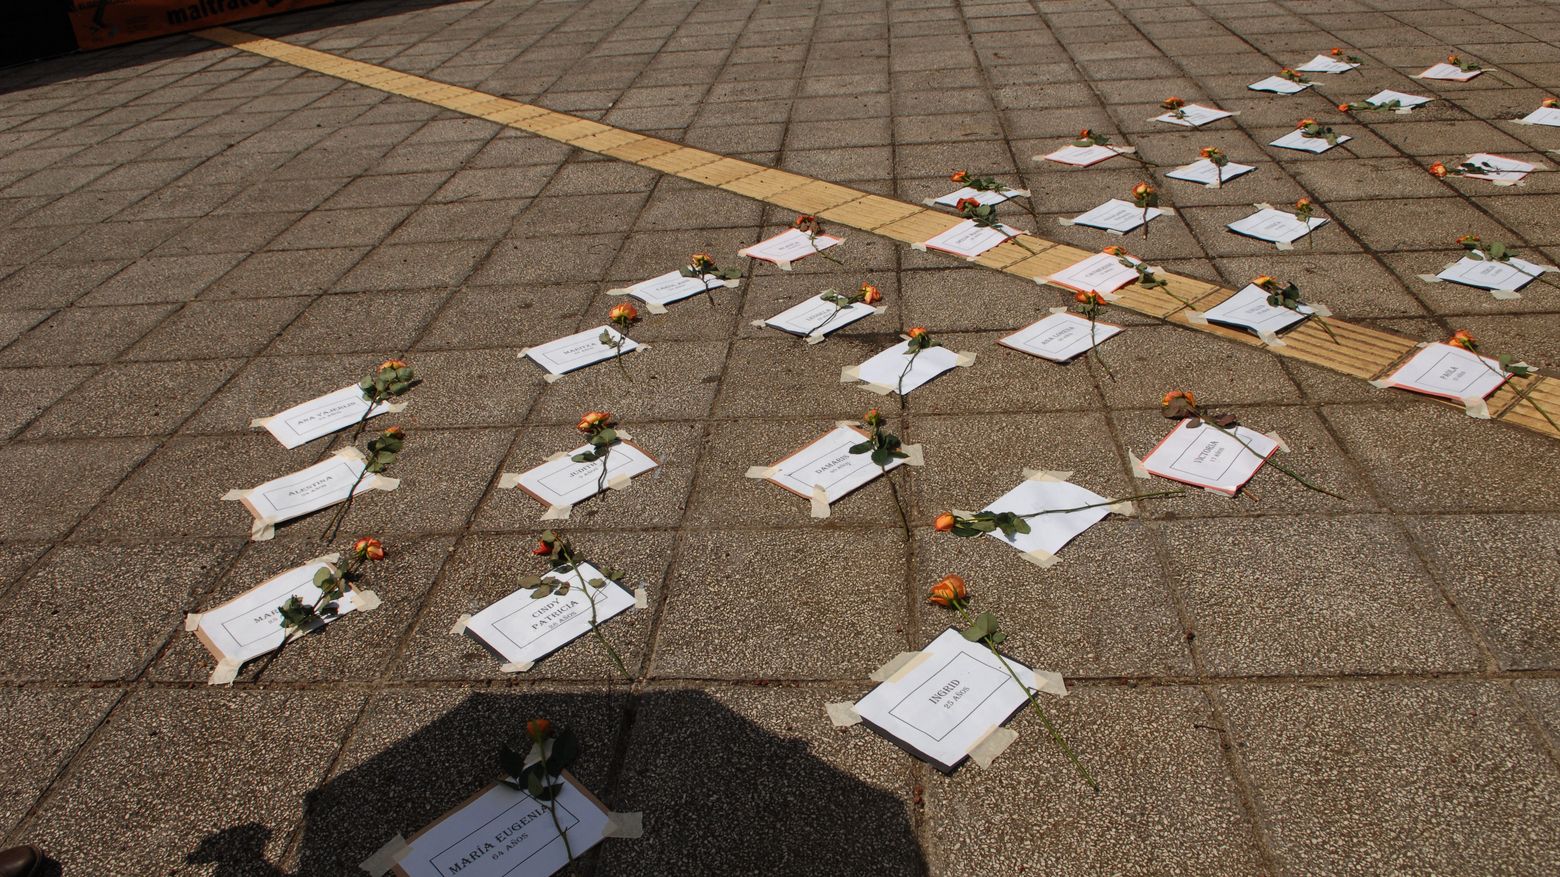 Weiße Zettel mit den Namen von ermordeten FLINTA* liegen auf einem öffentlichen Platz. Als Gedenken an die Opfer von geschlechtsspezifischer Gewaltliegt liegt daneben eine Rose.